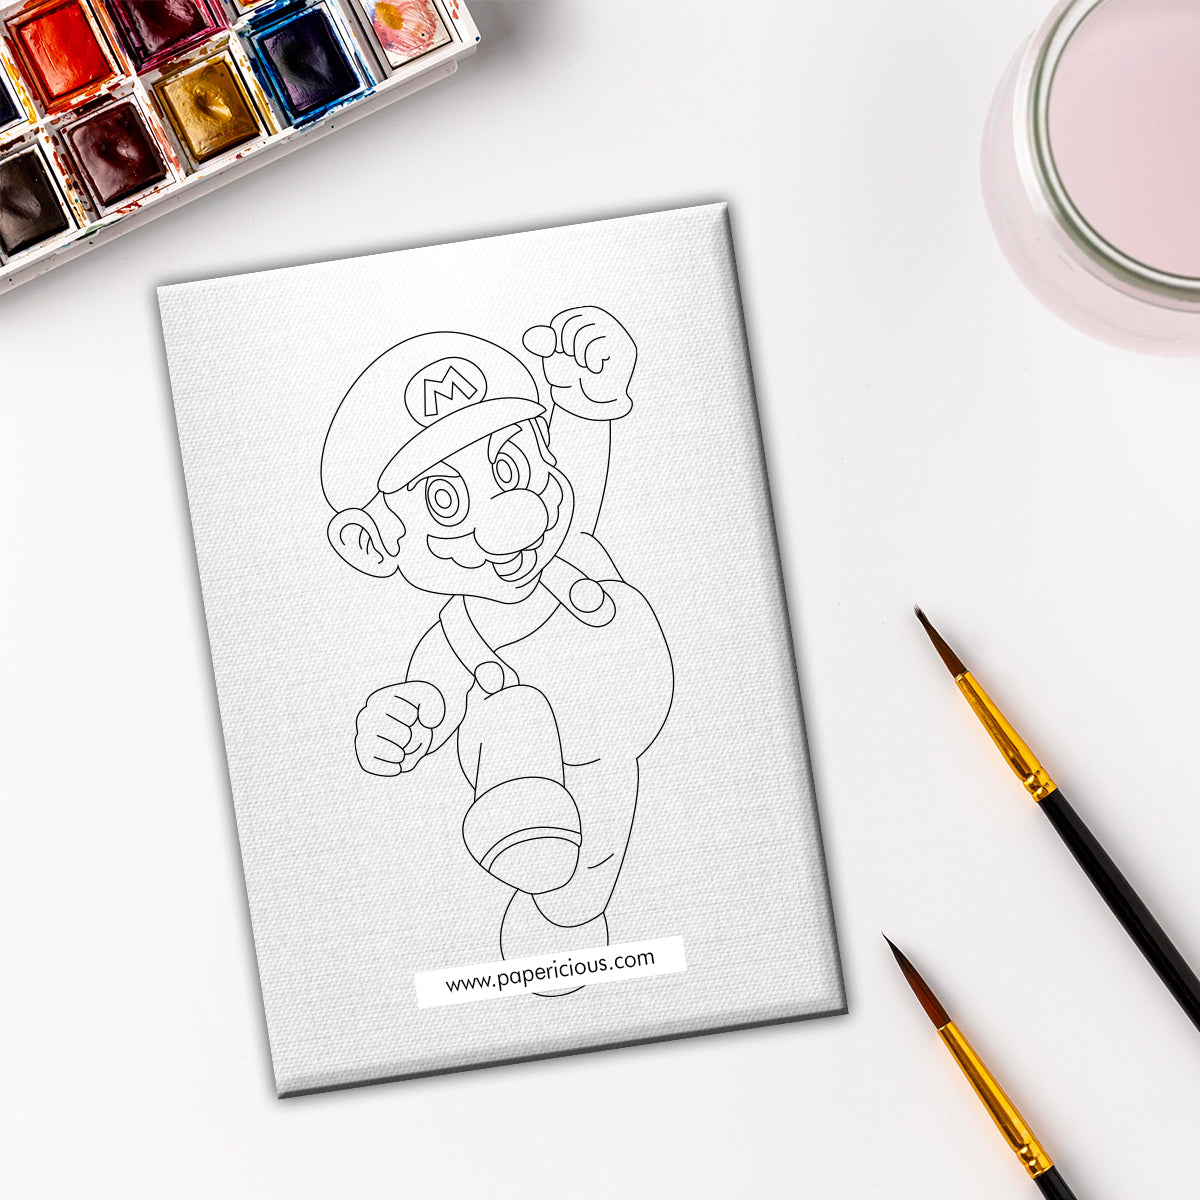 Pre Marked DIY Canvas - Mario Style 5